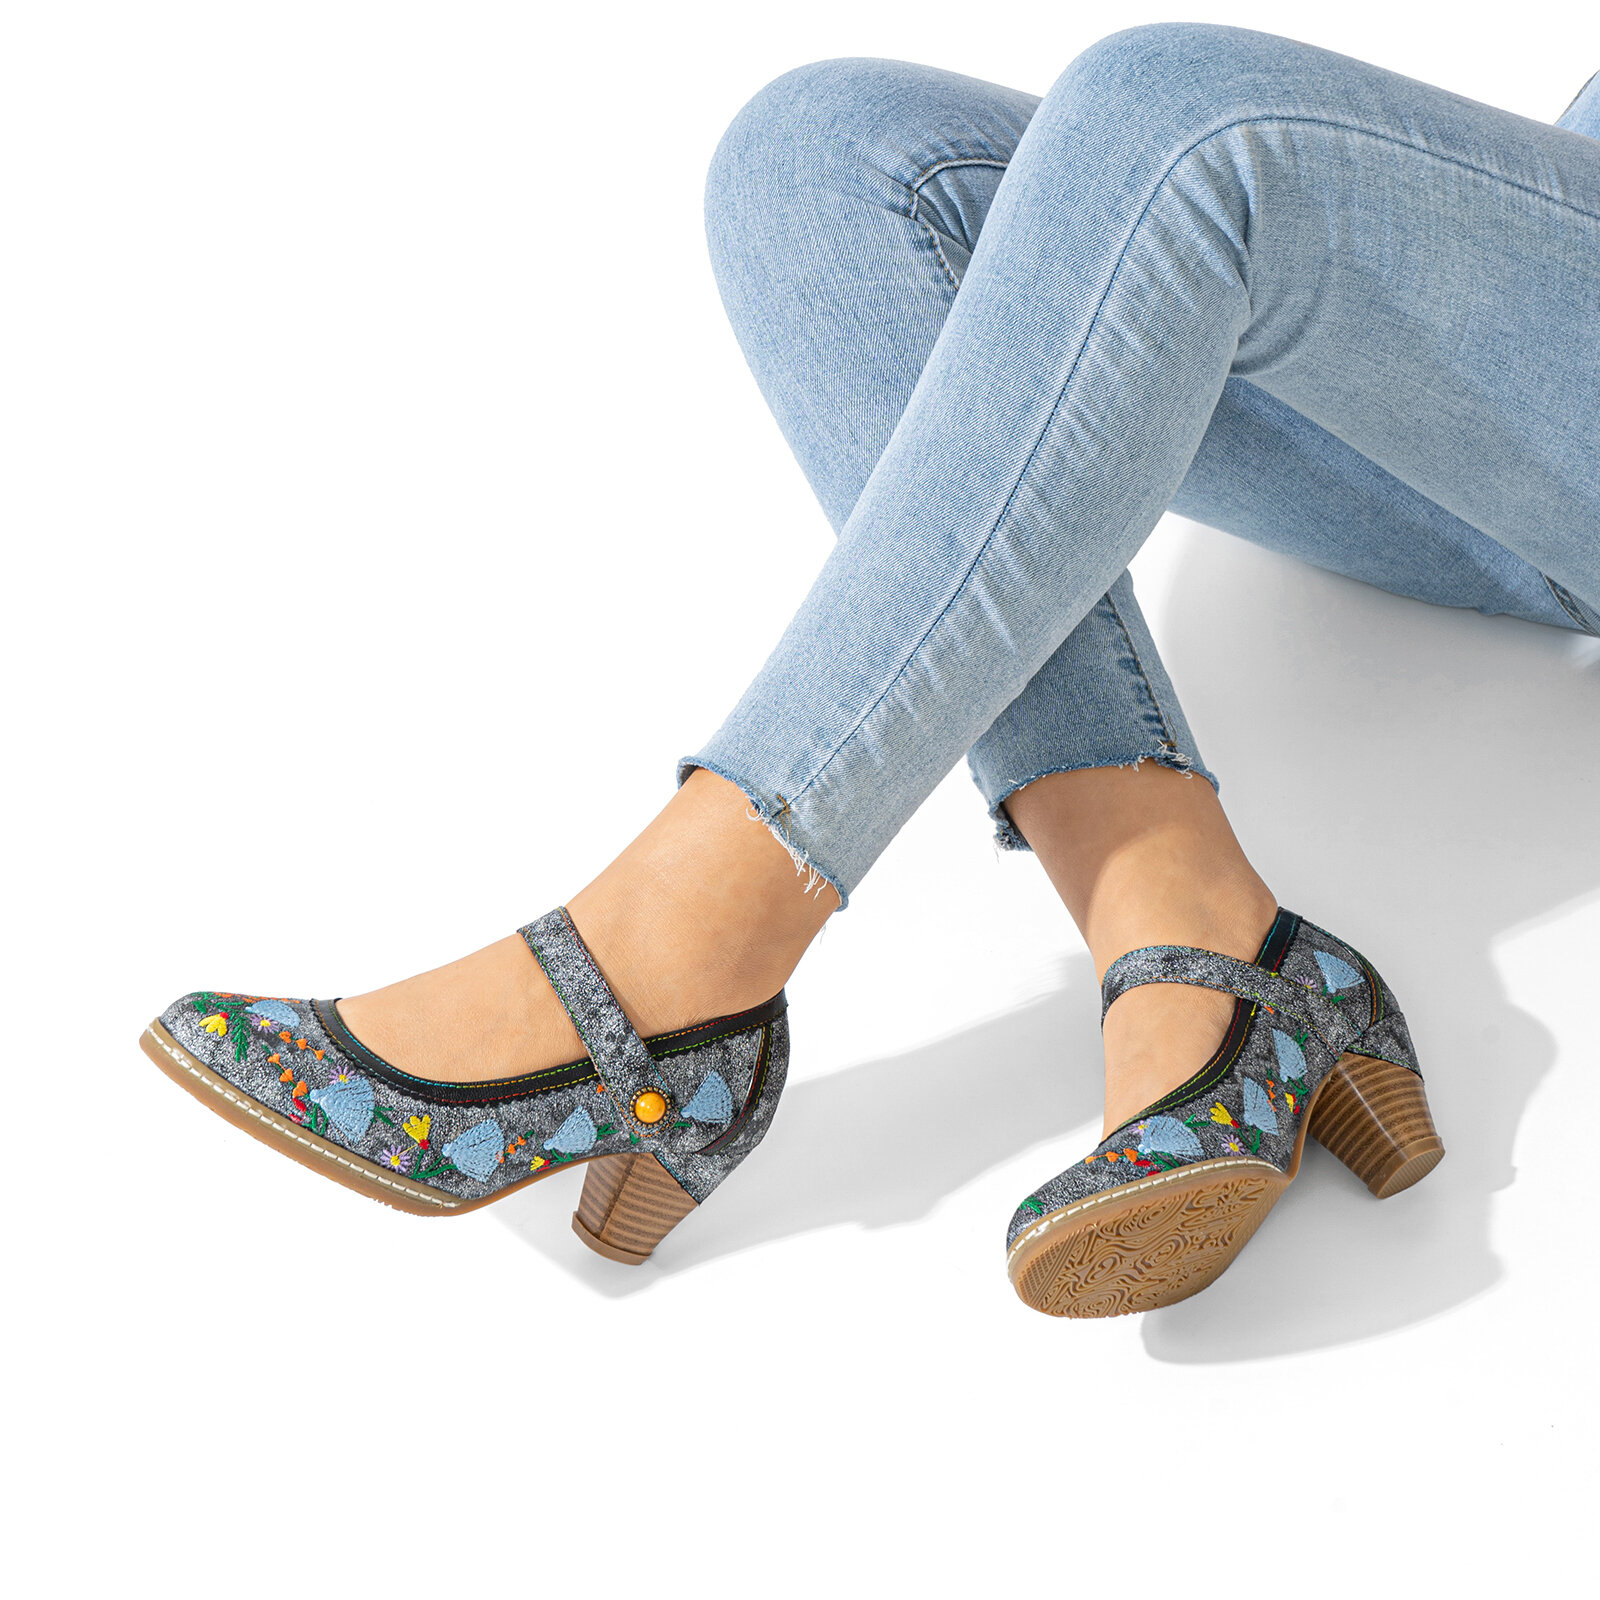 

Socofy Натуральная Кожа Удобные туфли на каблуке Мэри Джейн с цветочной вышивкой в стиле ретро